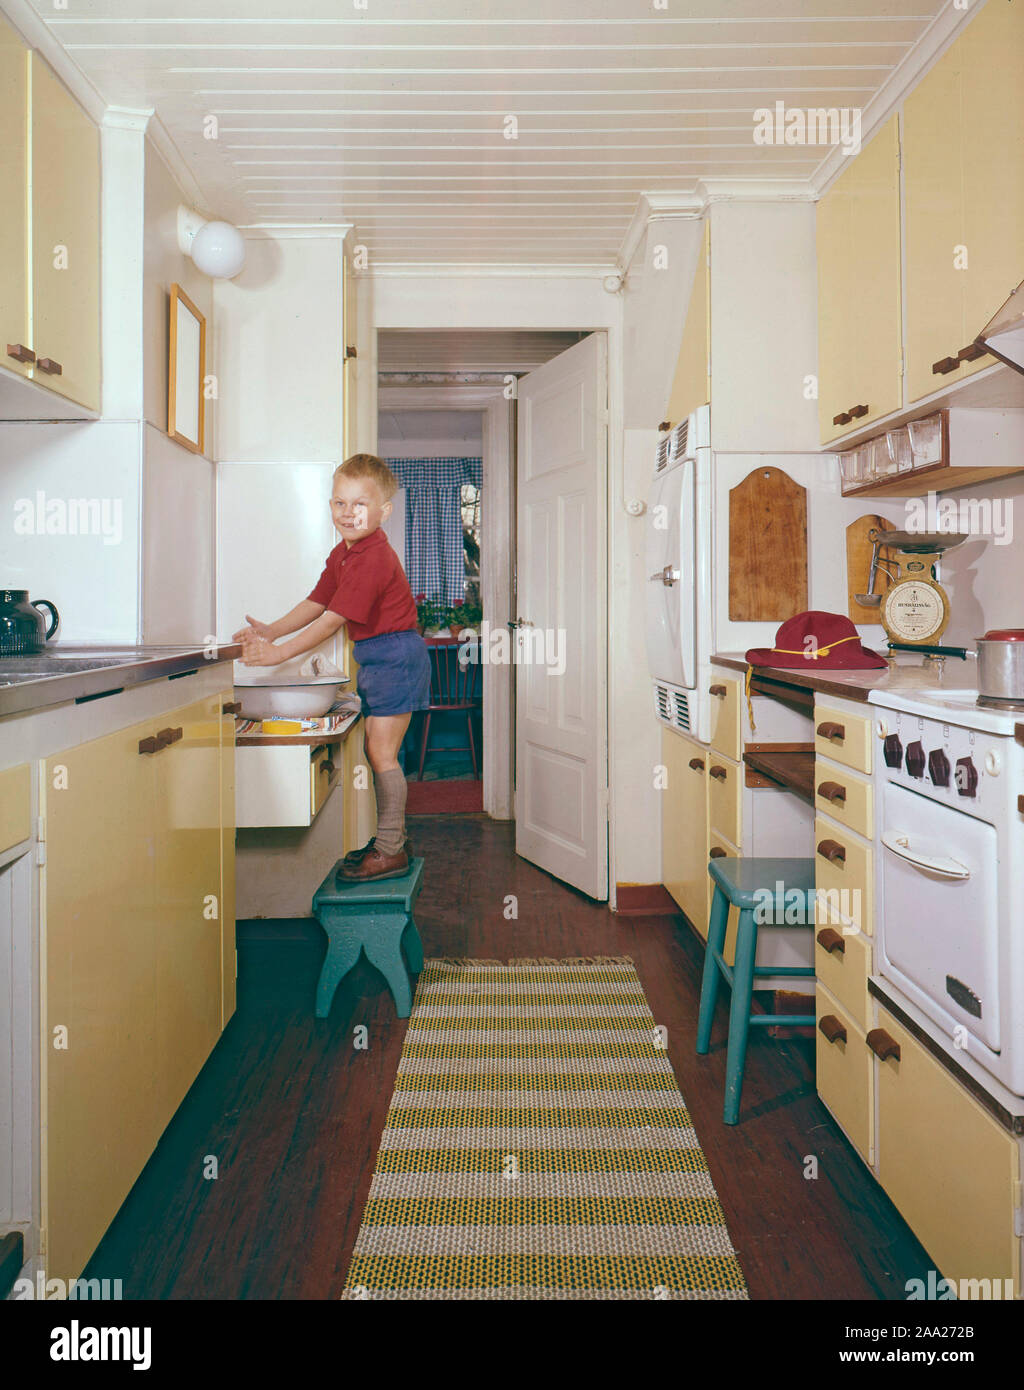 Küche der 50s-60s. Ein Junge ich s stehen auf einem Schemel und wäscht seine Hände. Die Küche ist typisch mit gelben Farben und sichtbaren Objekte aus der Zeit. Schweden 1950s 1960s Stockfoto